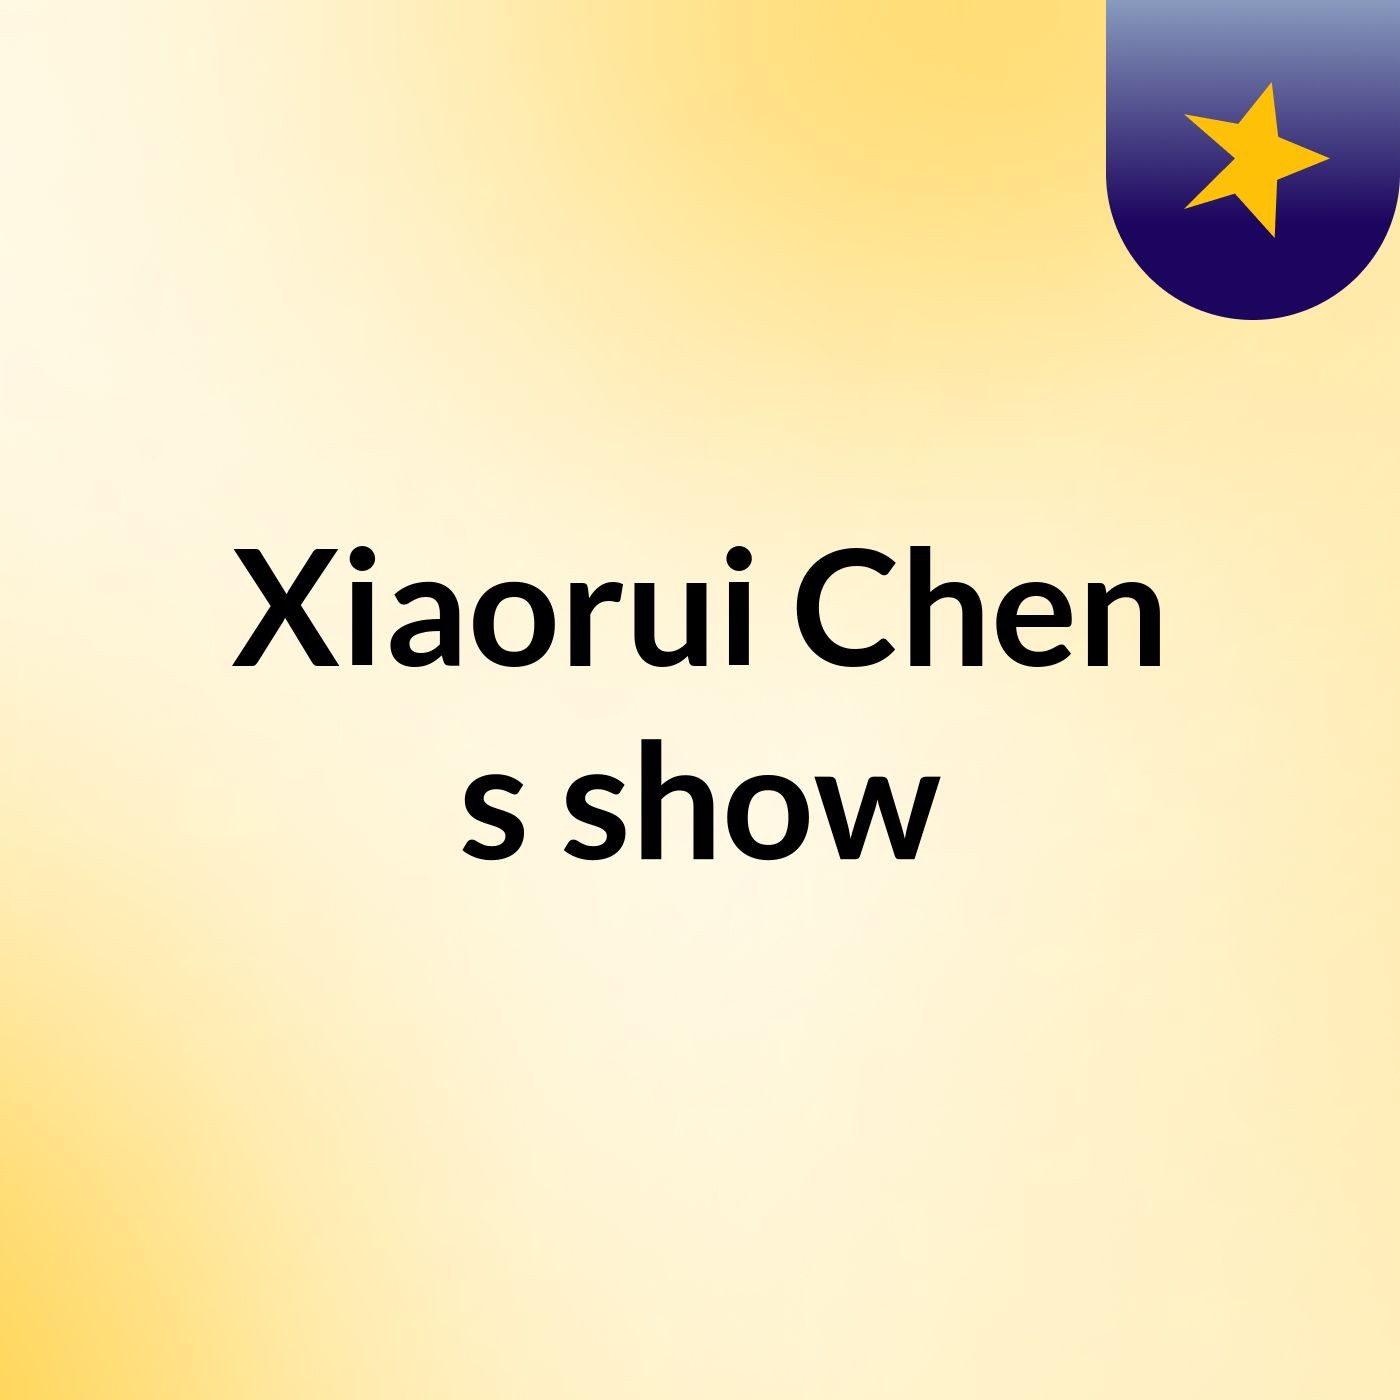 Xiaorui Chen's show